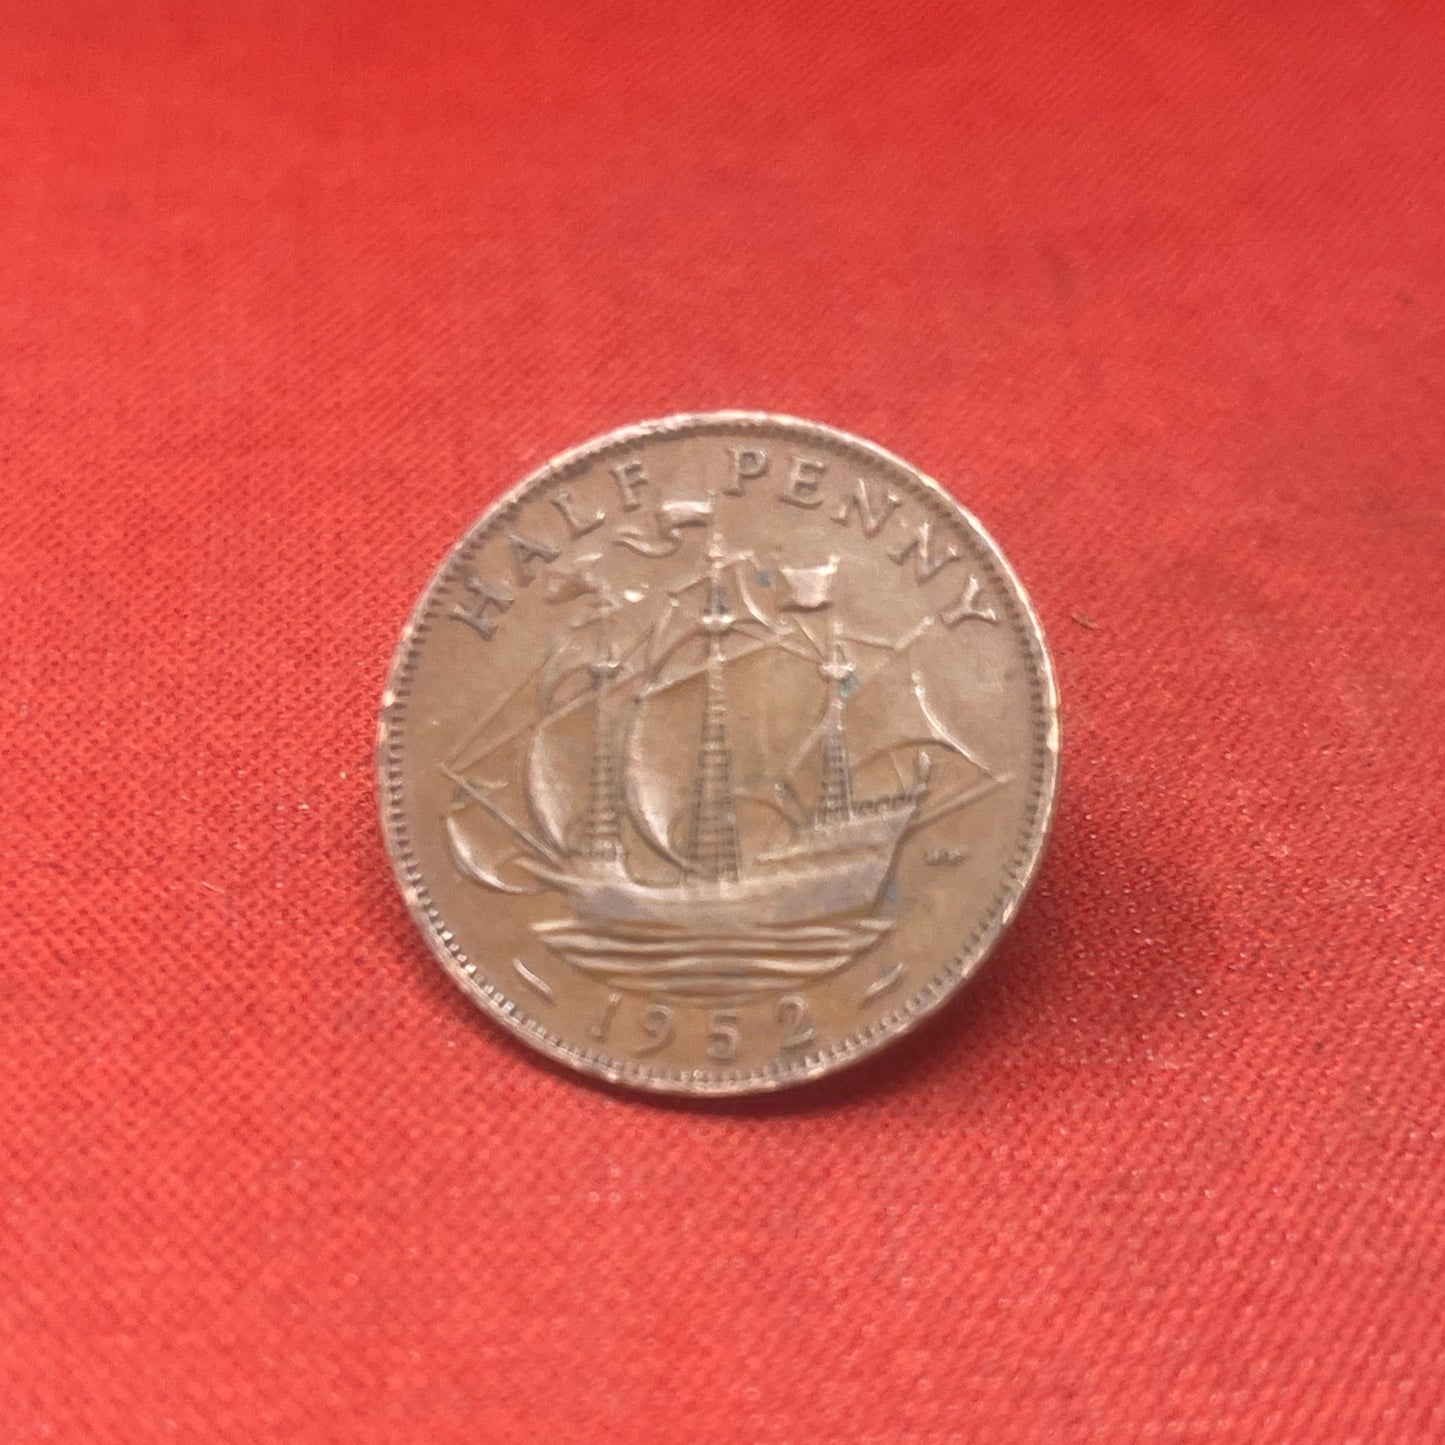 King George VI 1952 Half Penny